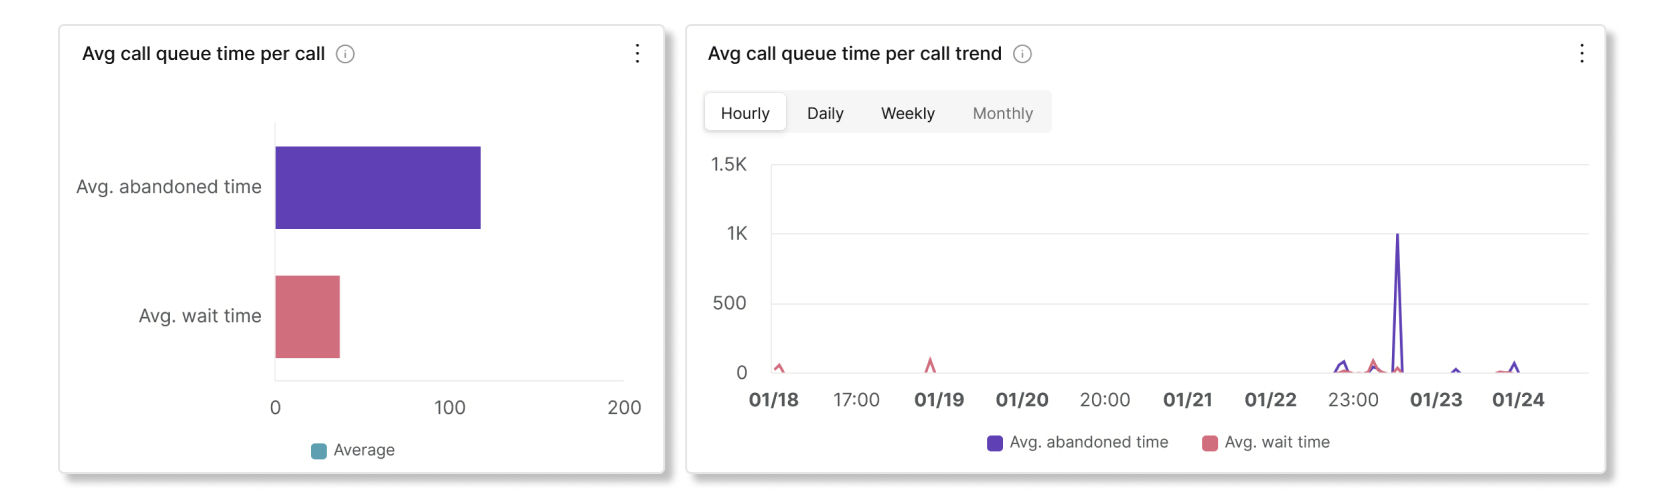 Nombre moyen de minutes de file d'attente par appel et graphiques de tendances dans l'analyse des statistiques de la file d'attente d'appels